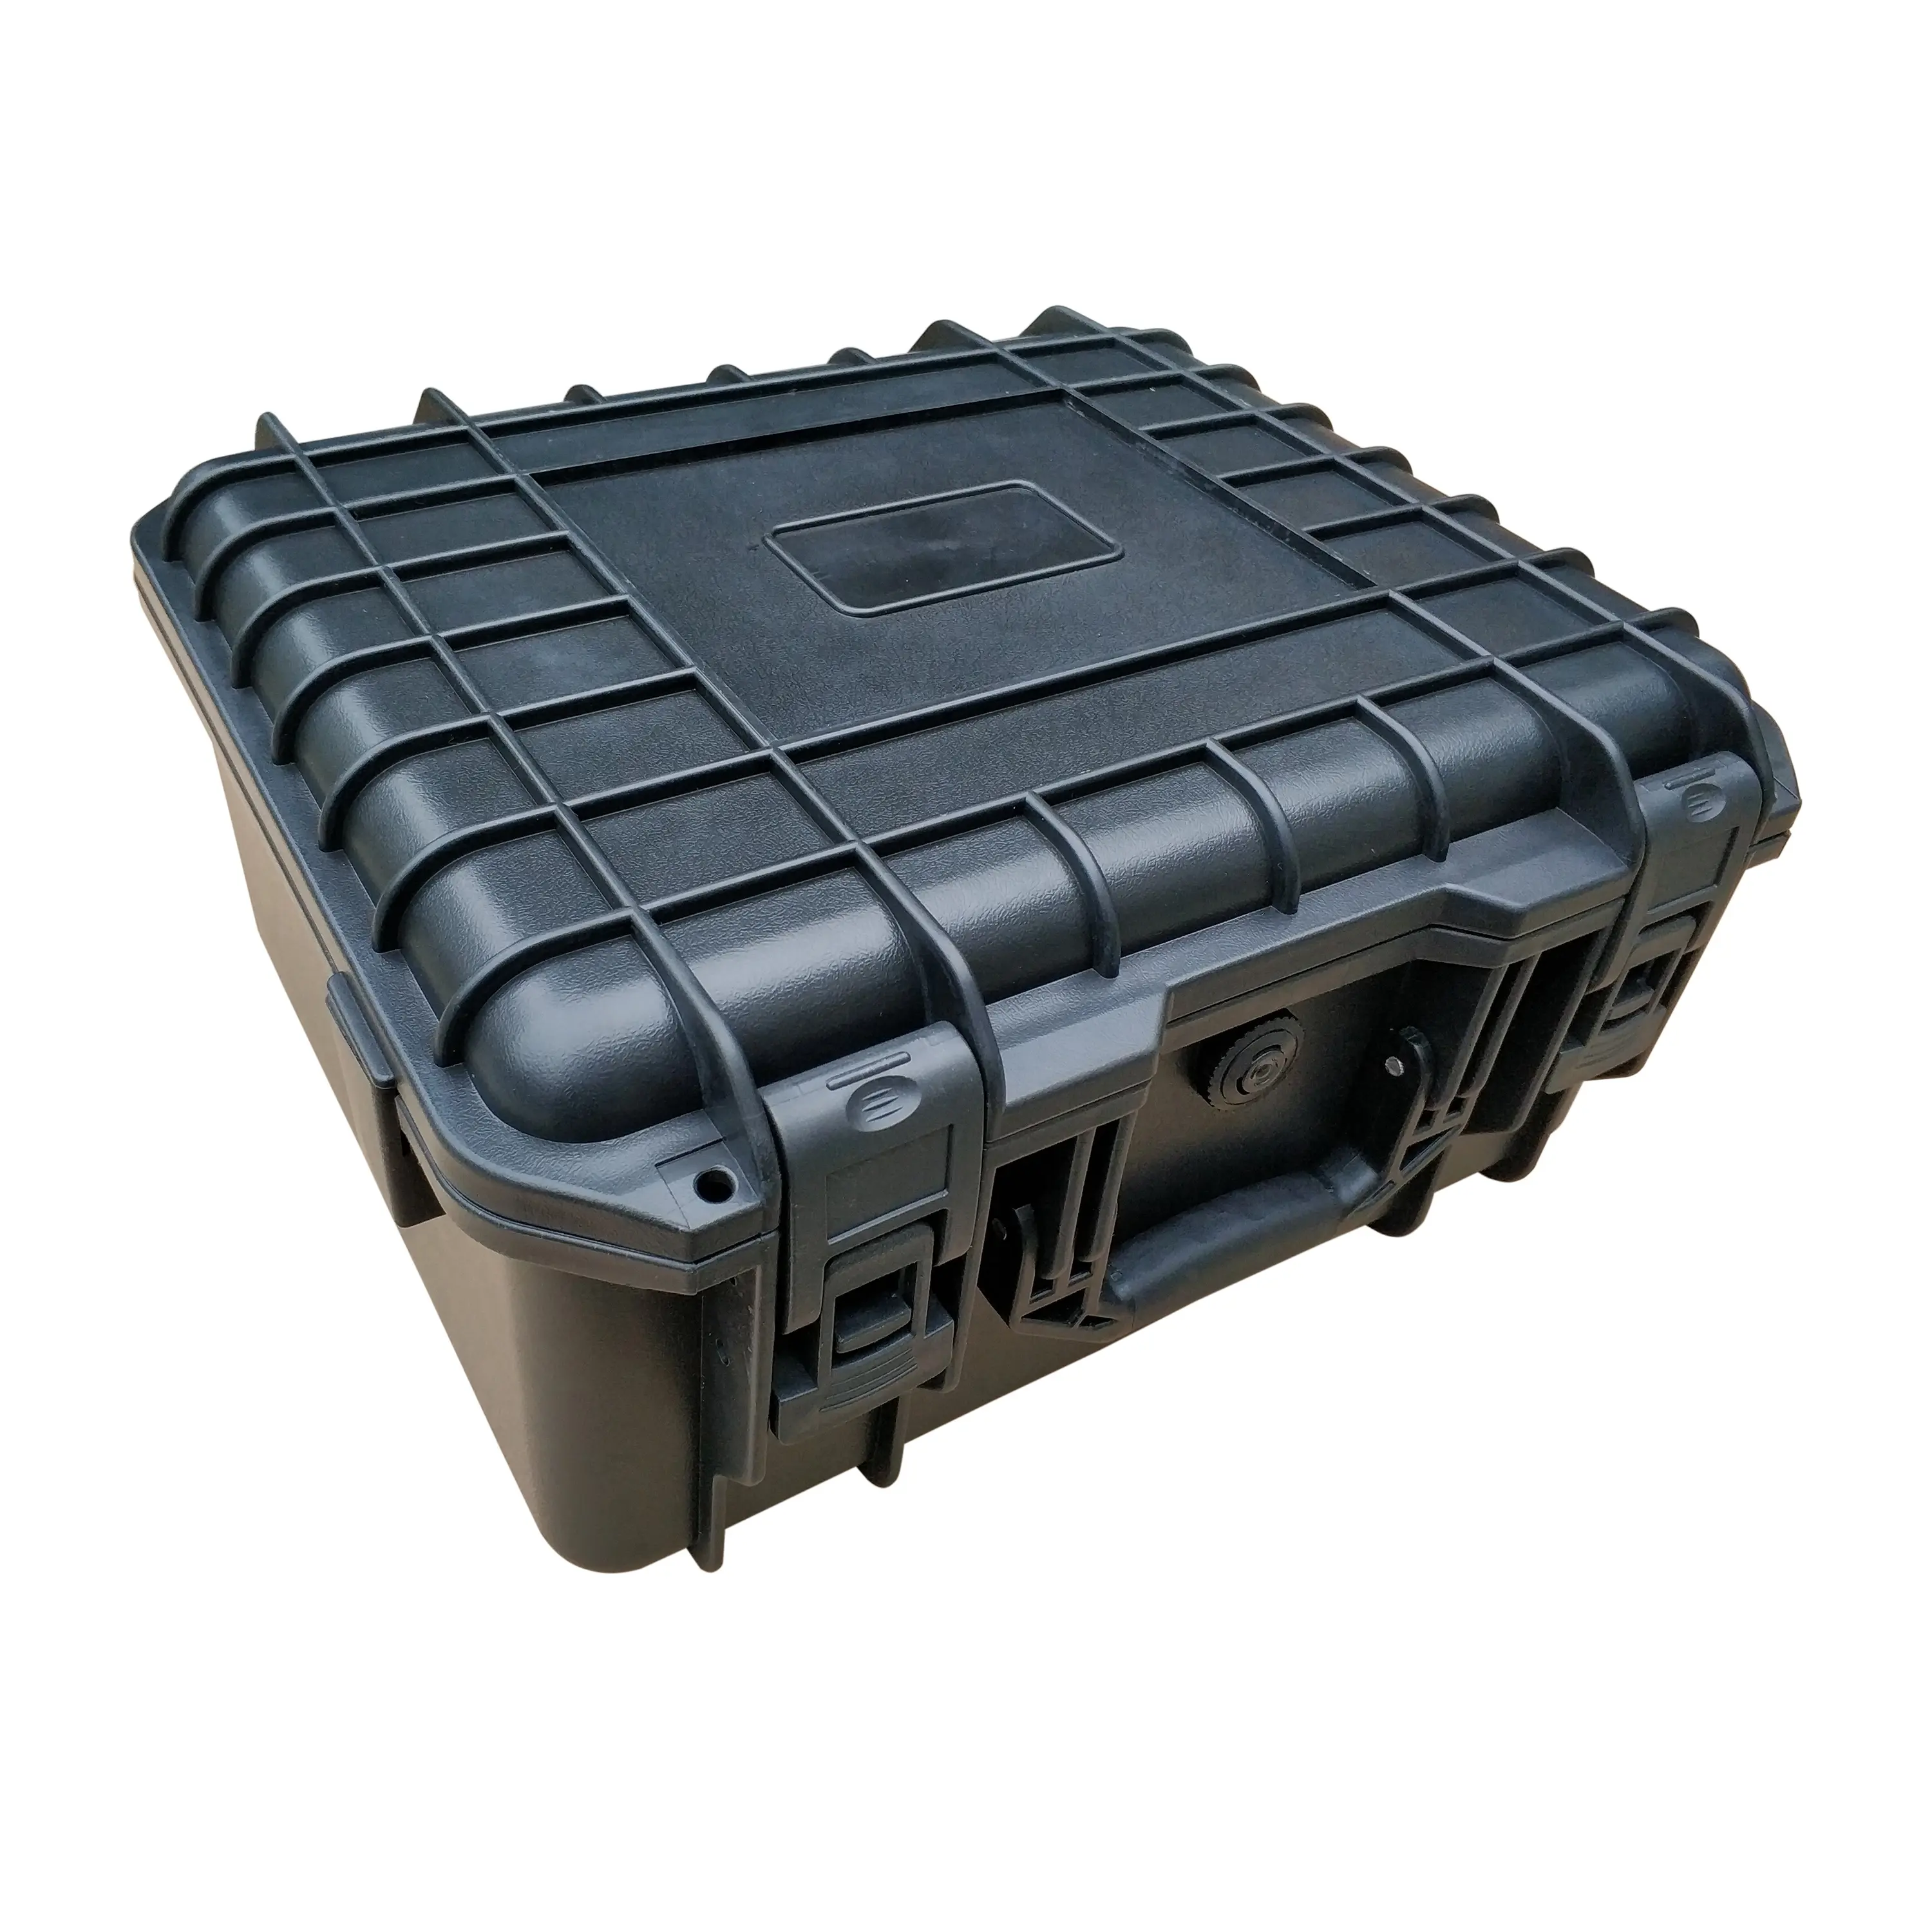 सूटकेस 2019 नई डिजाइन हार्ड प्लास्टिक उपकरण प्रकरण-3760011